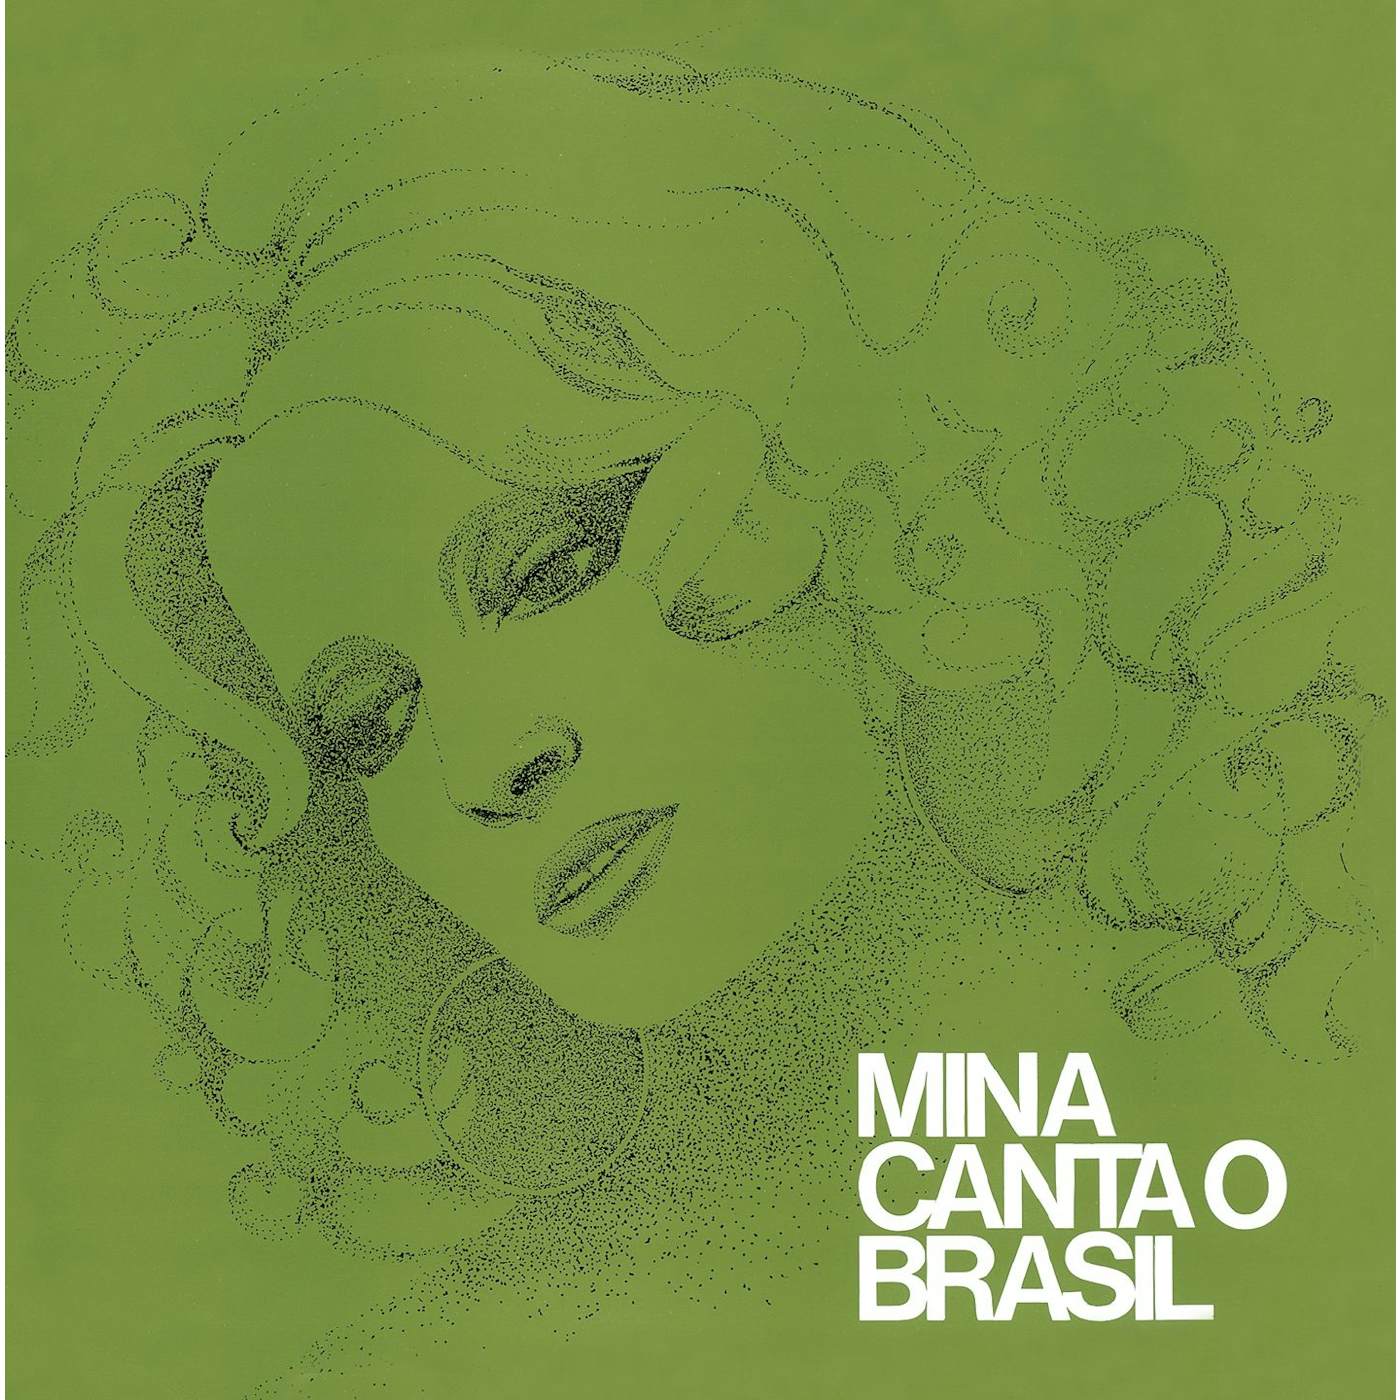 MINA CANTA O BRASIL CD